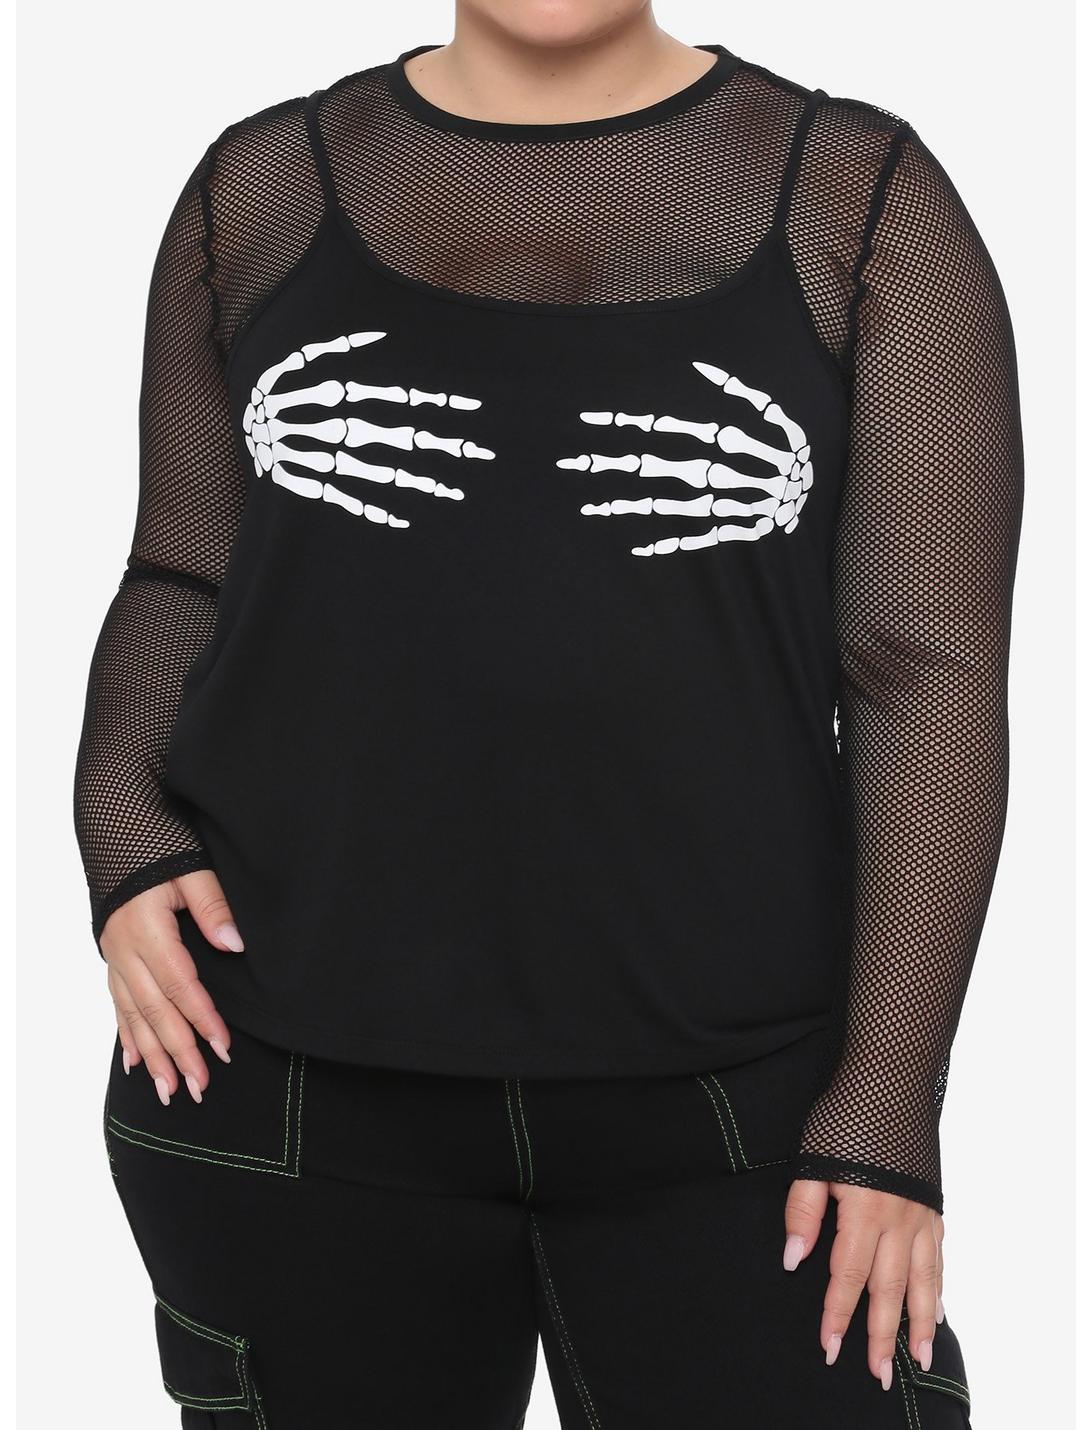 Skeleton Hands Fishnet Girls Long-Sleeve Top Plus Size, BLACK, hi-res